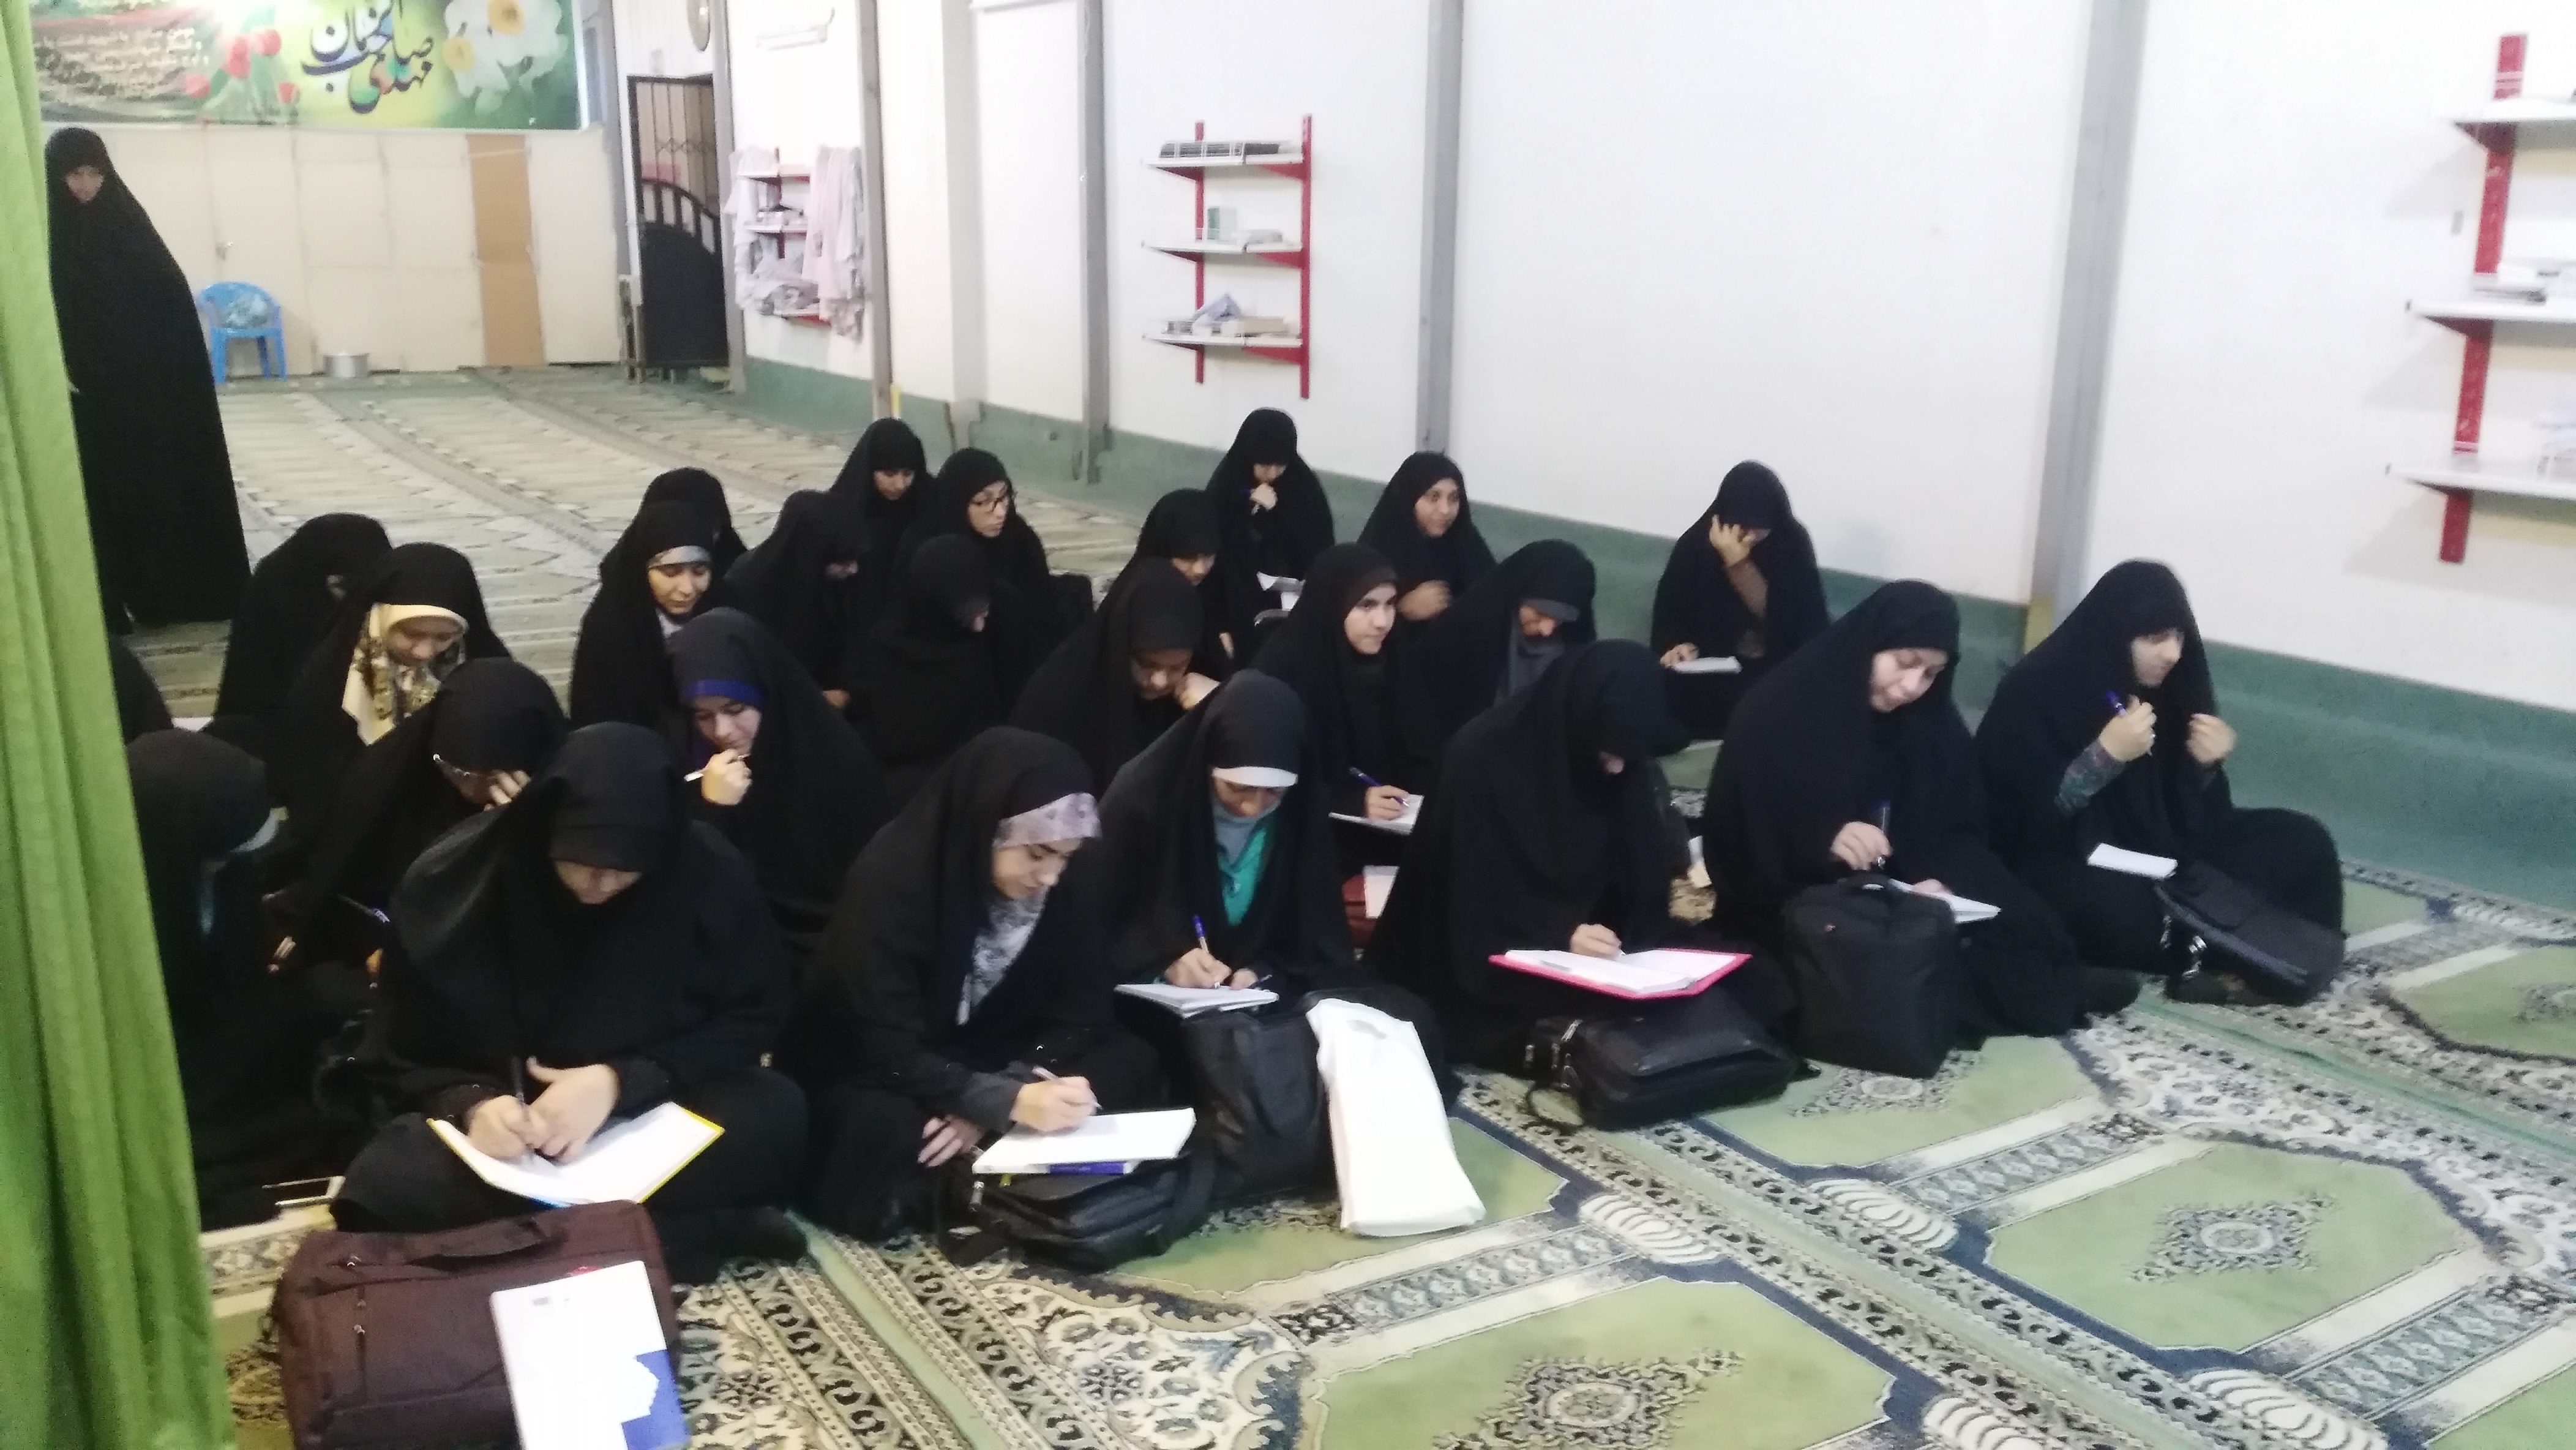 خواب و خوابیدن از منظر قرآن و علم پزشکی حوزه غدیریه شیراز 